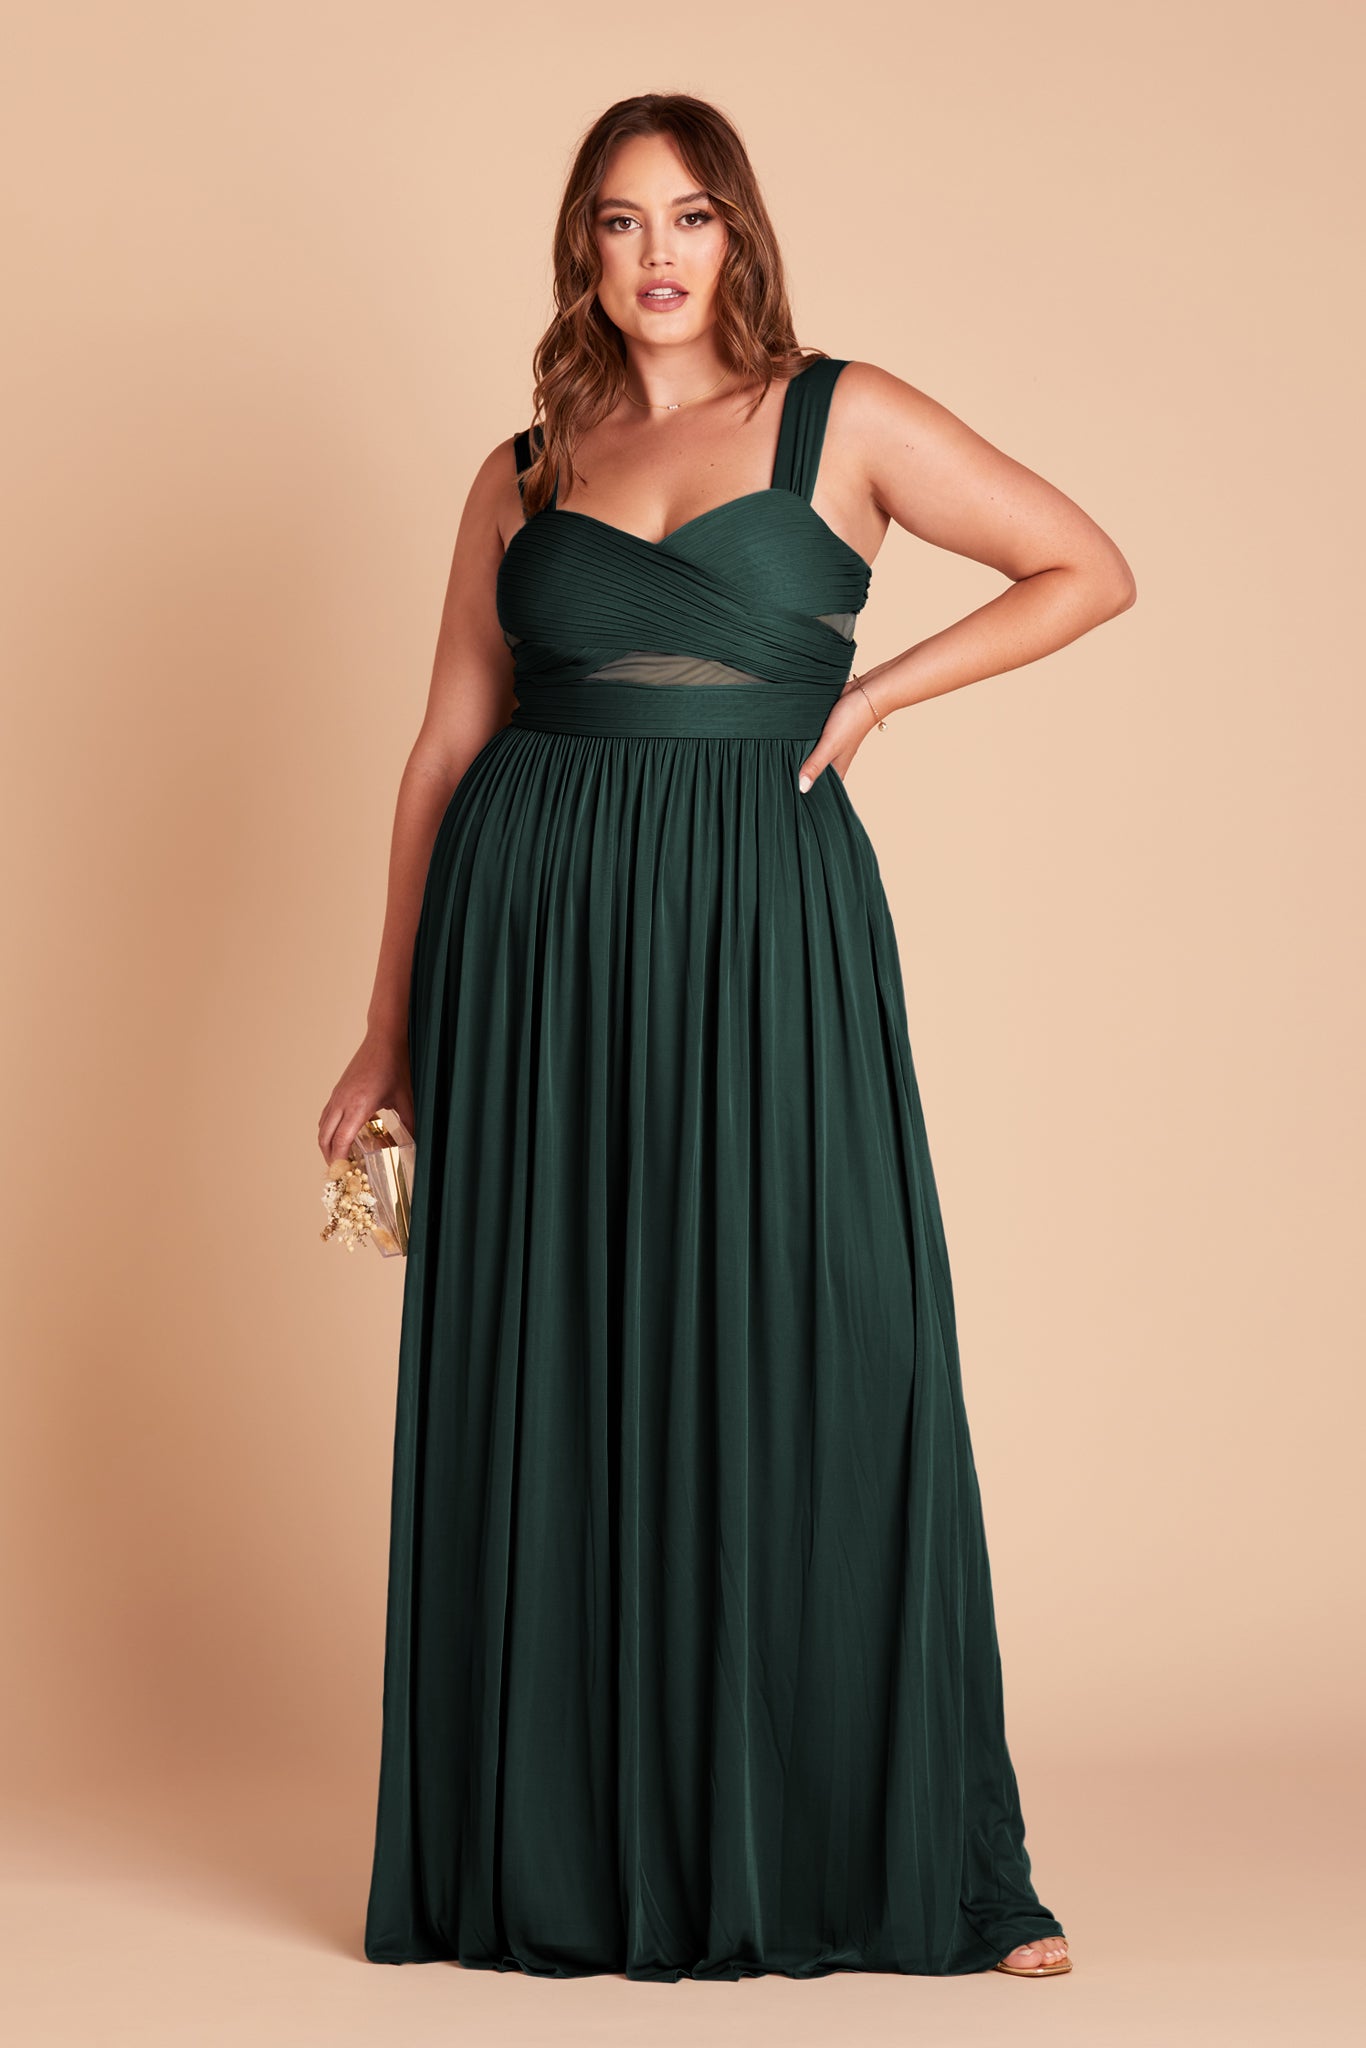 Emerald Elsye Dress by Birdy Grey